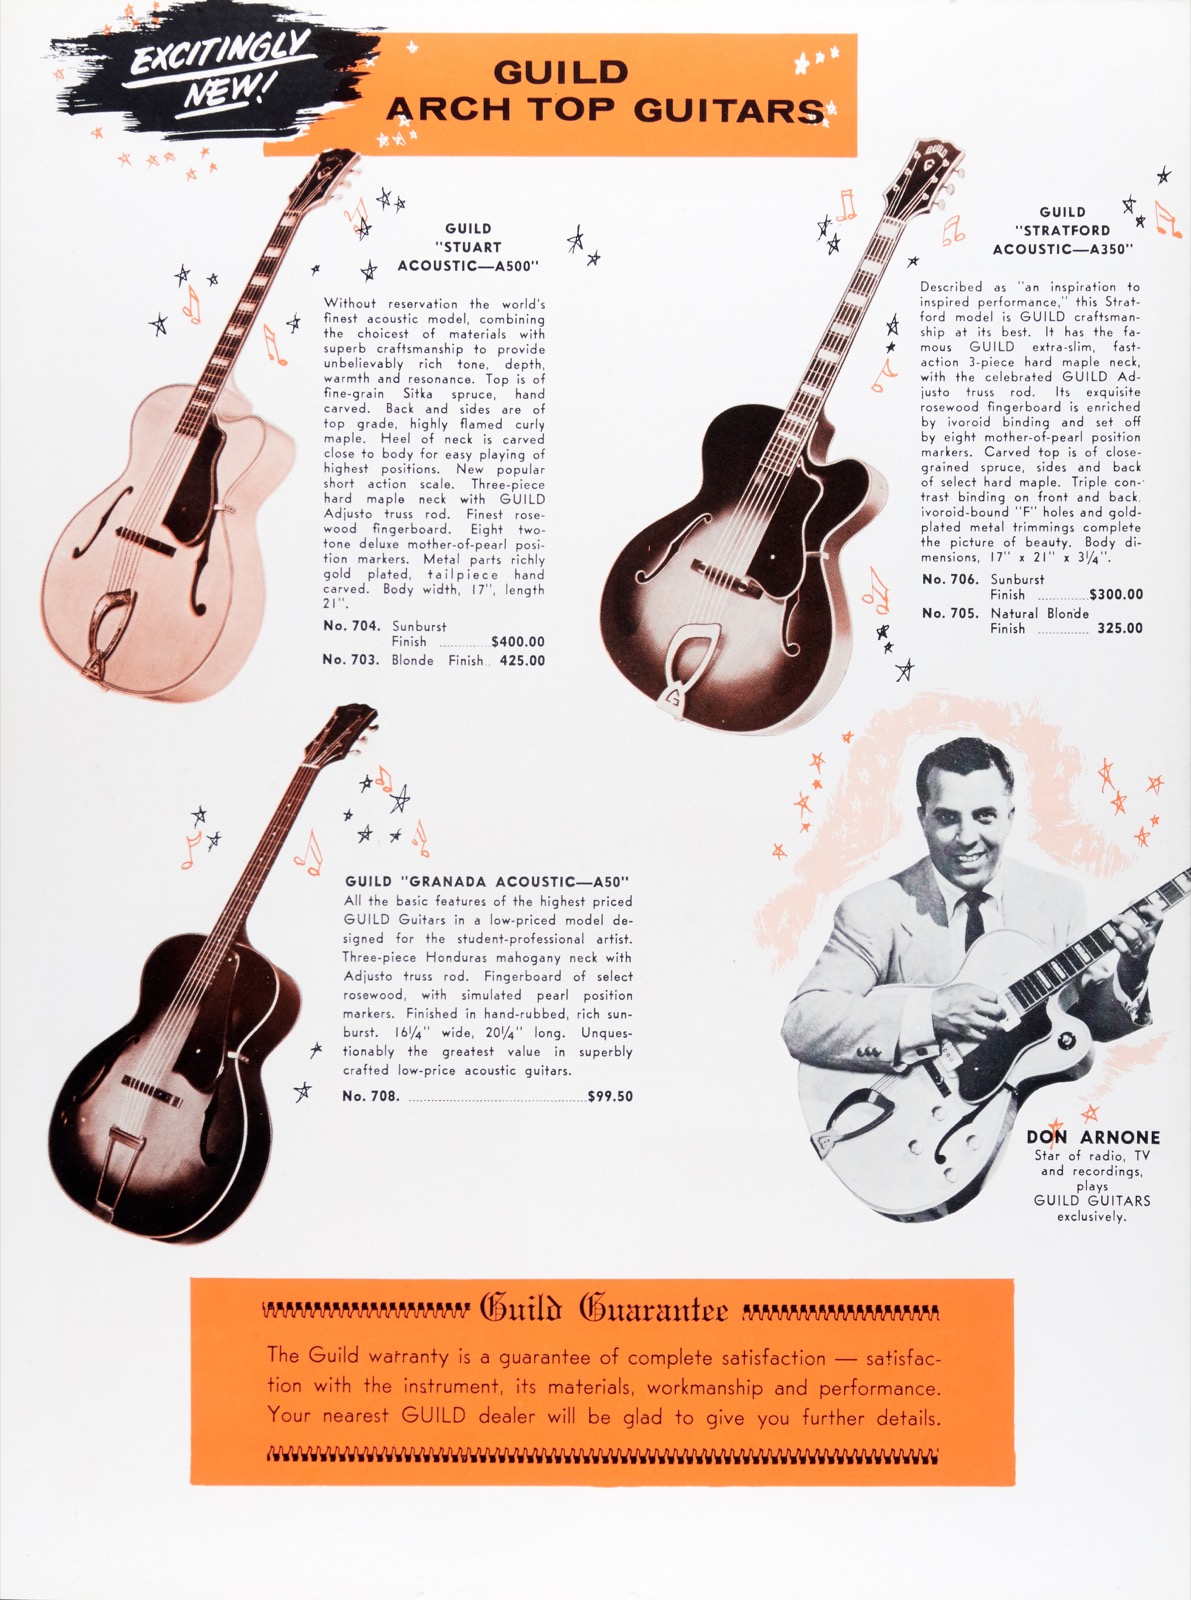 Guild-1955-Catalog-pg08_1600.jpg